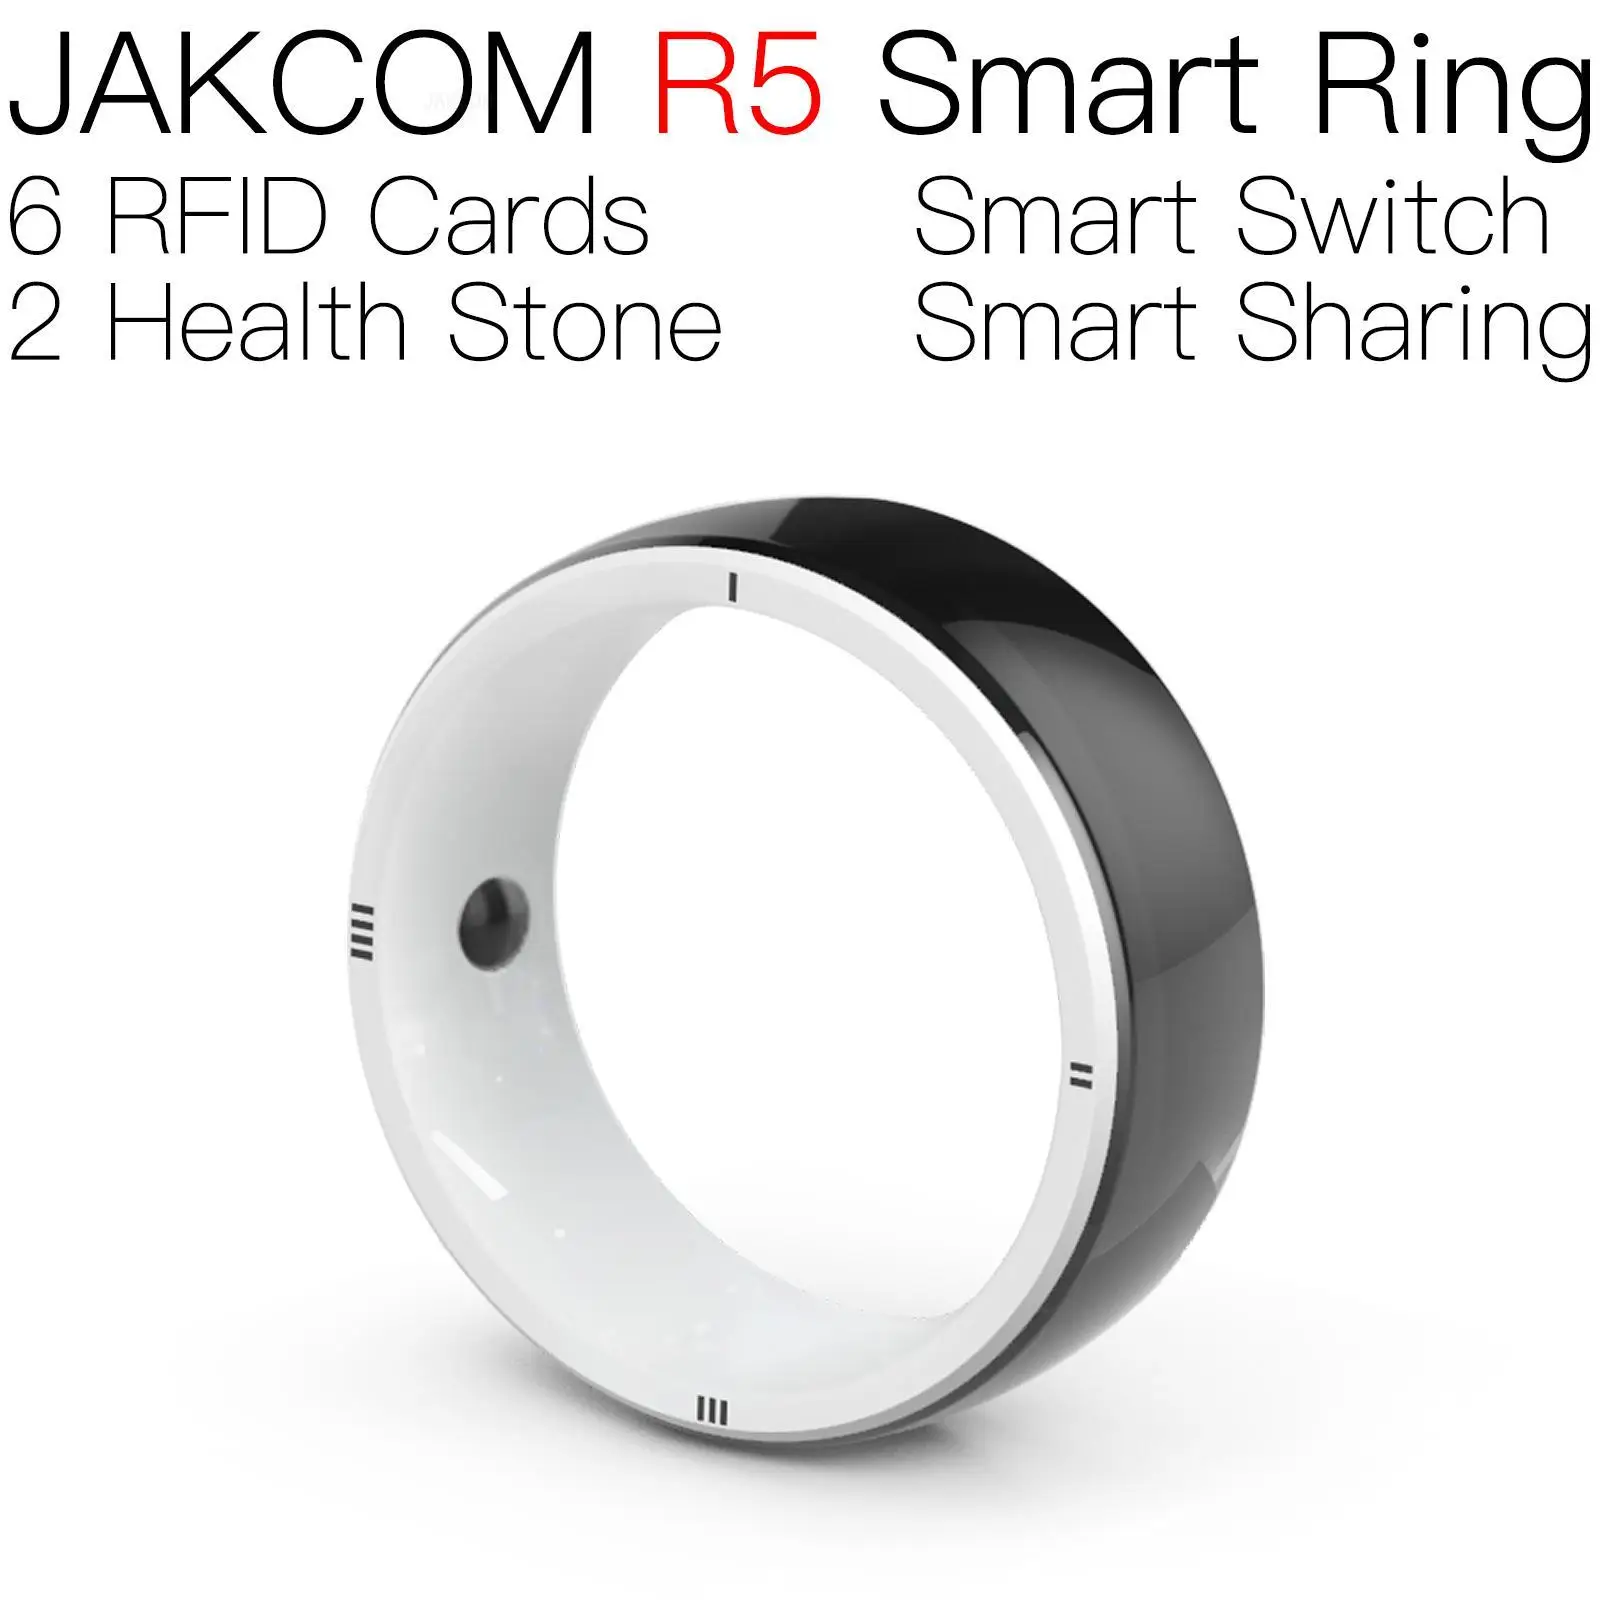 

Умное кольцо JAKCOM R5, красивое, чем карточка, стандартное металлическое кольцо, оптовая продажа, копия карточки для ключей 125 кГц, поддерживает paypal, карта защиты rfid